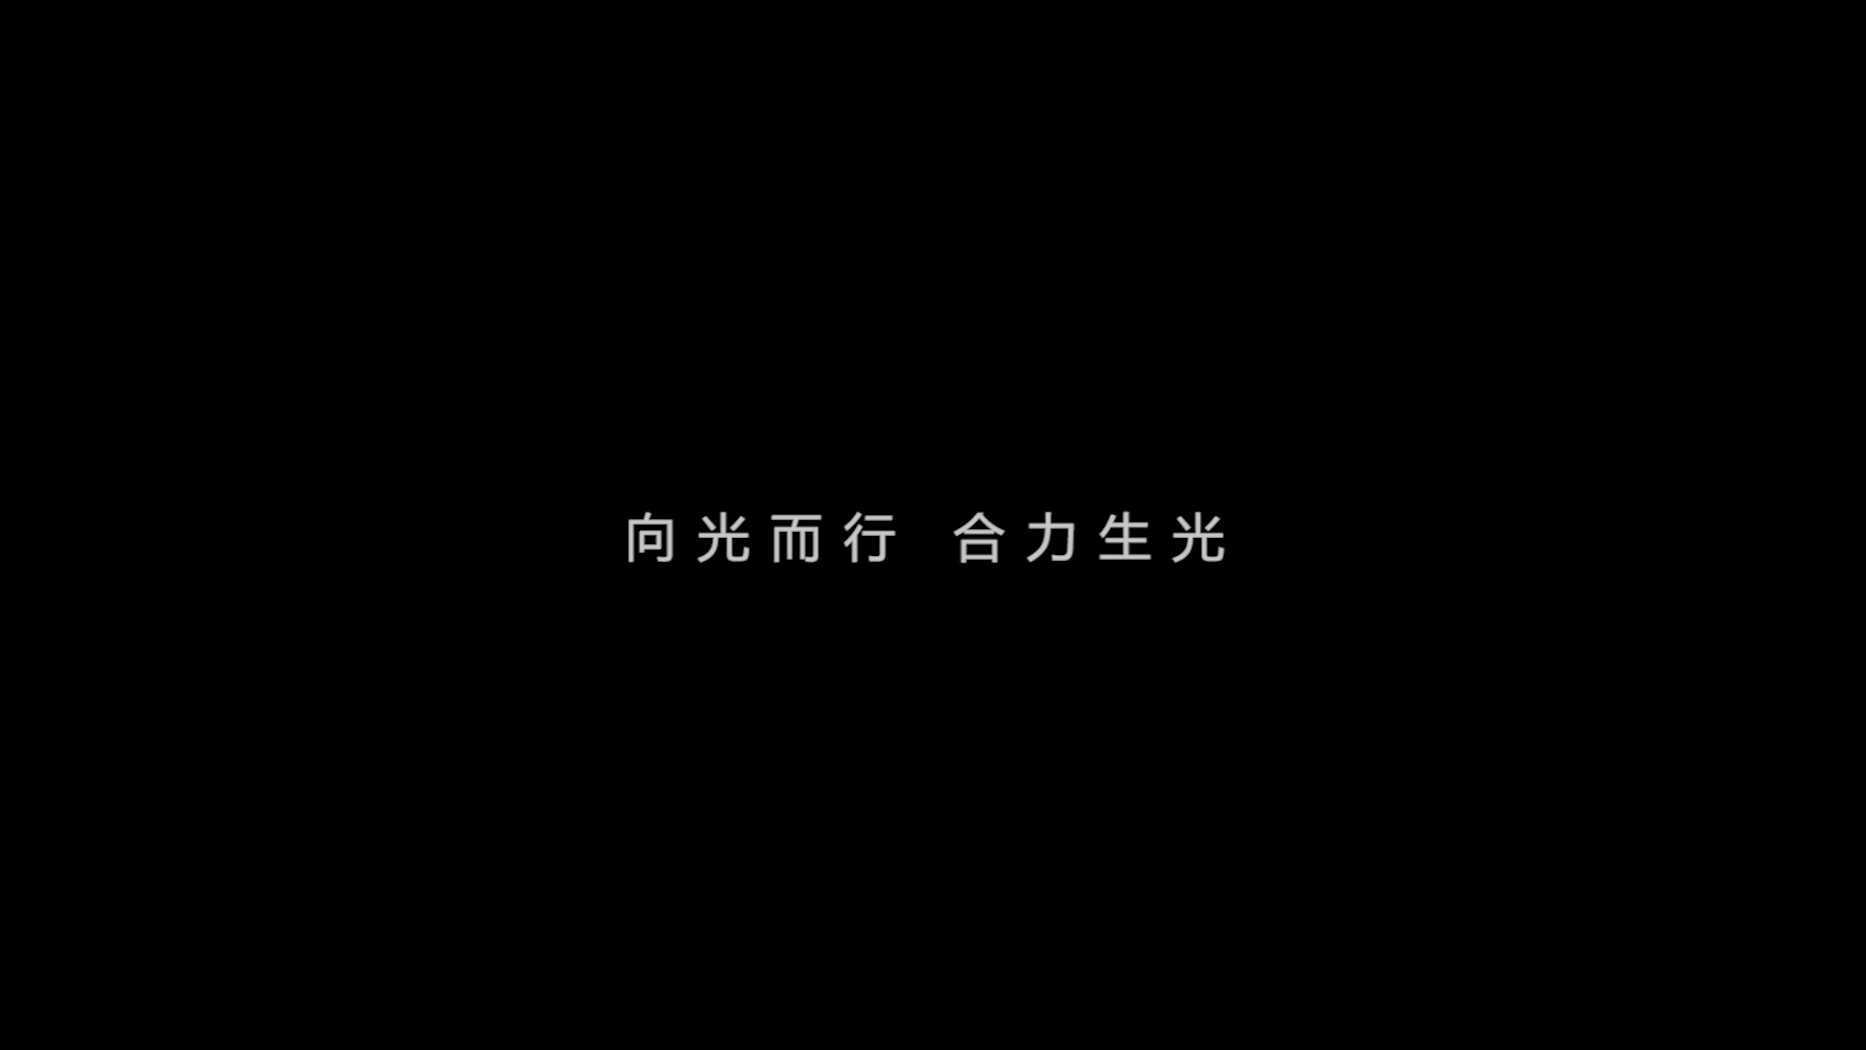 2021北京国际电影节×视相Variety 概念短片《向光而行》